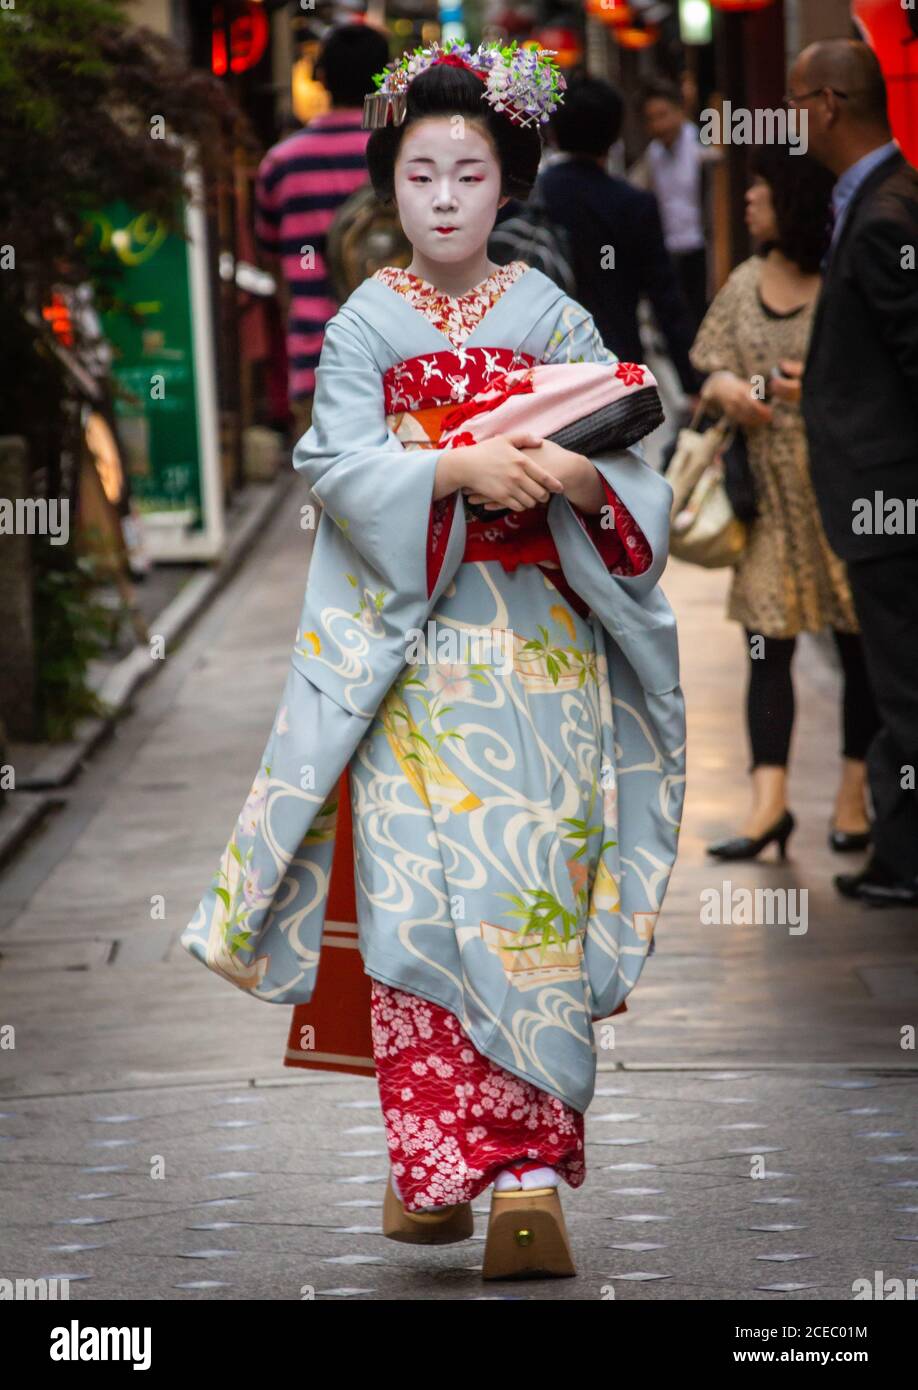 Japon - Mai, 10 2013: Femme asiatique avec le maquillage de geisha portant des vêtements traditionnels et marchant sur le pavé sur la rue de la ville Banque D'Images